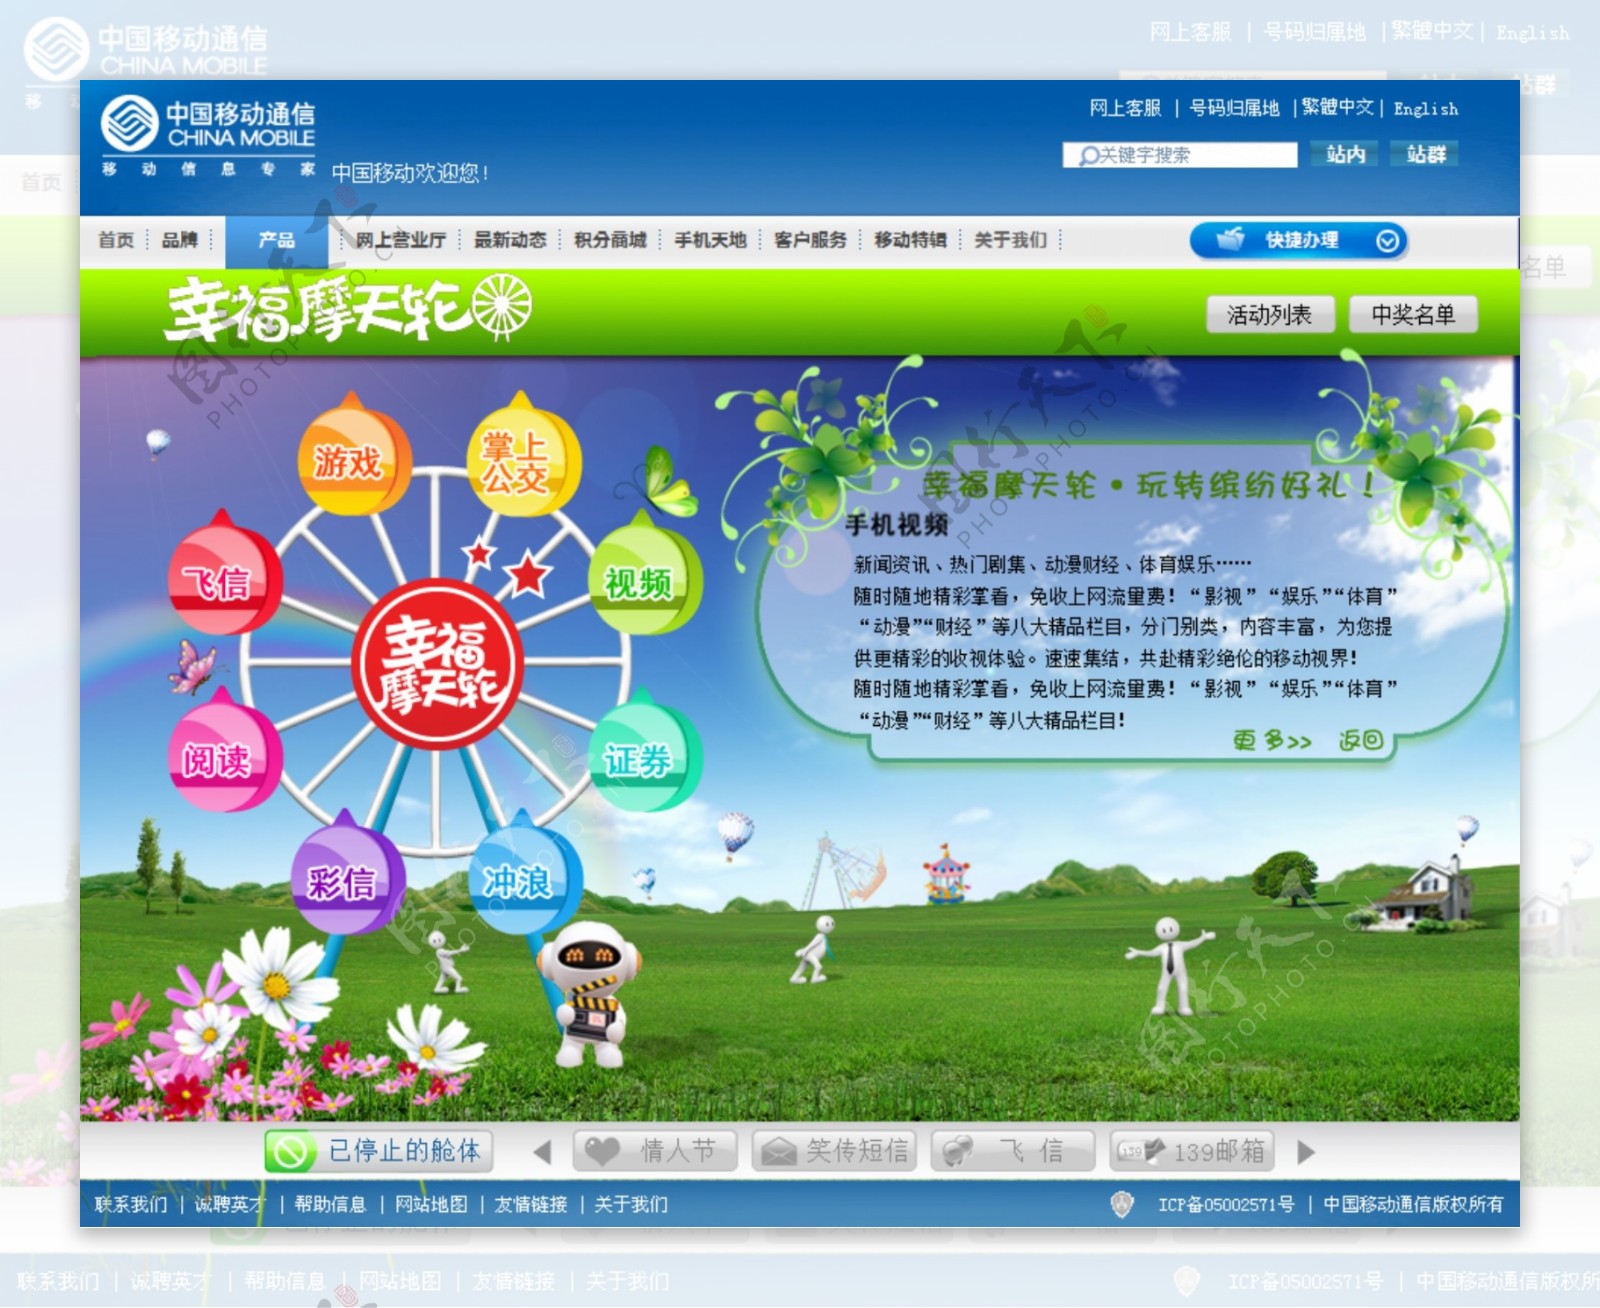 中国移动网页设计